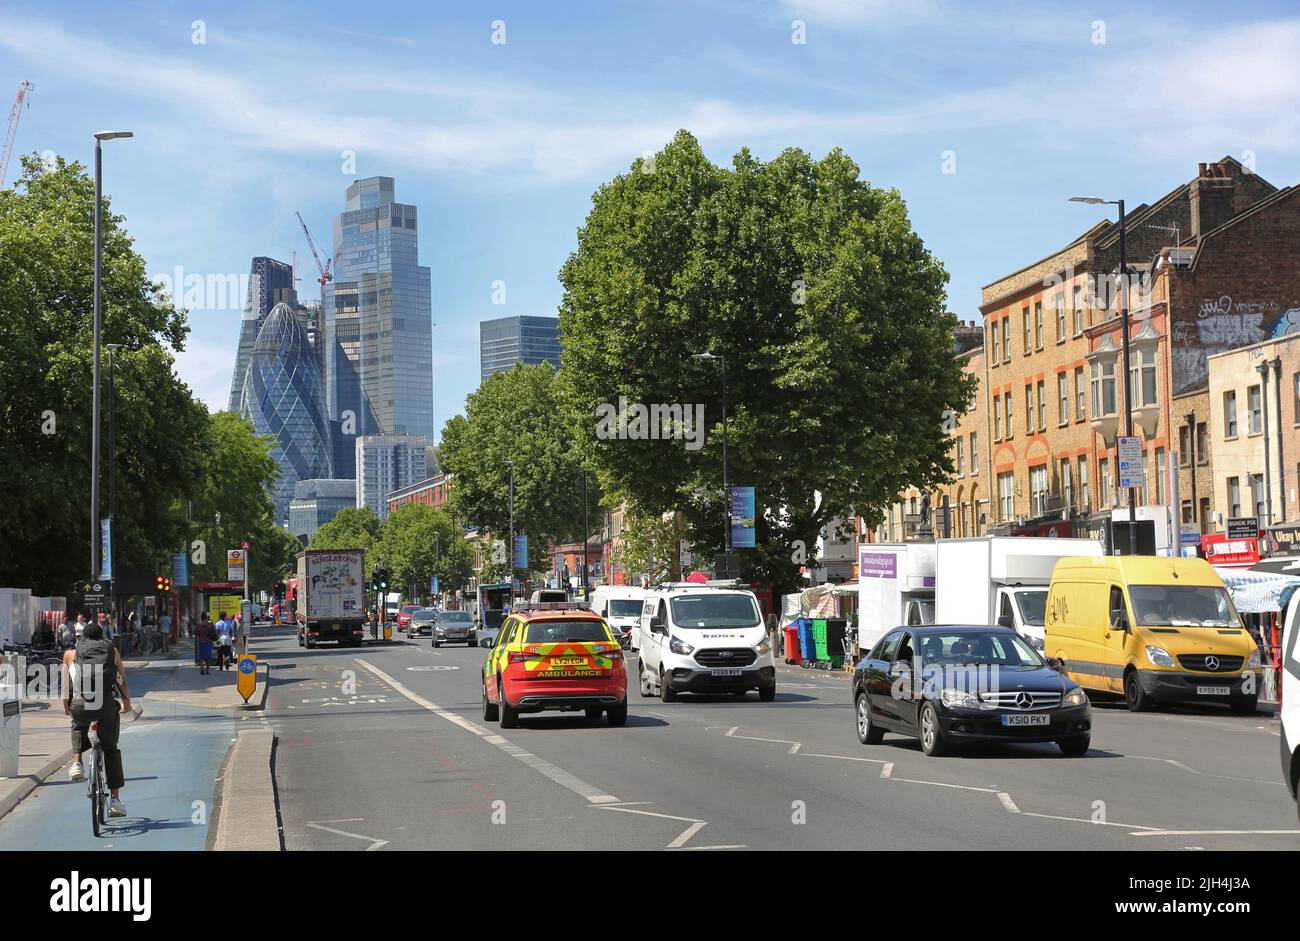 Blicken Sie auf der Mile End Road neben der Whitechapel Station nach Westen in Richtung City of London. Zeigt viel Verkehr, Fahrradweg und Stadttürme dahinter. Stockfoto